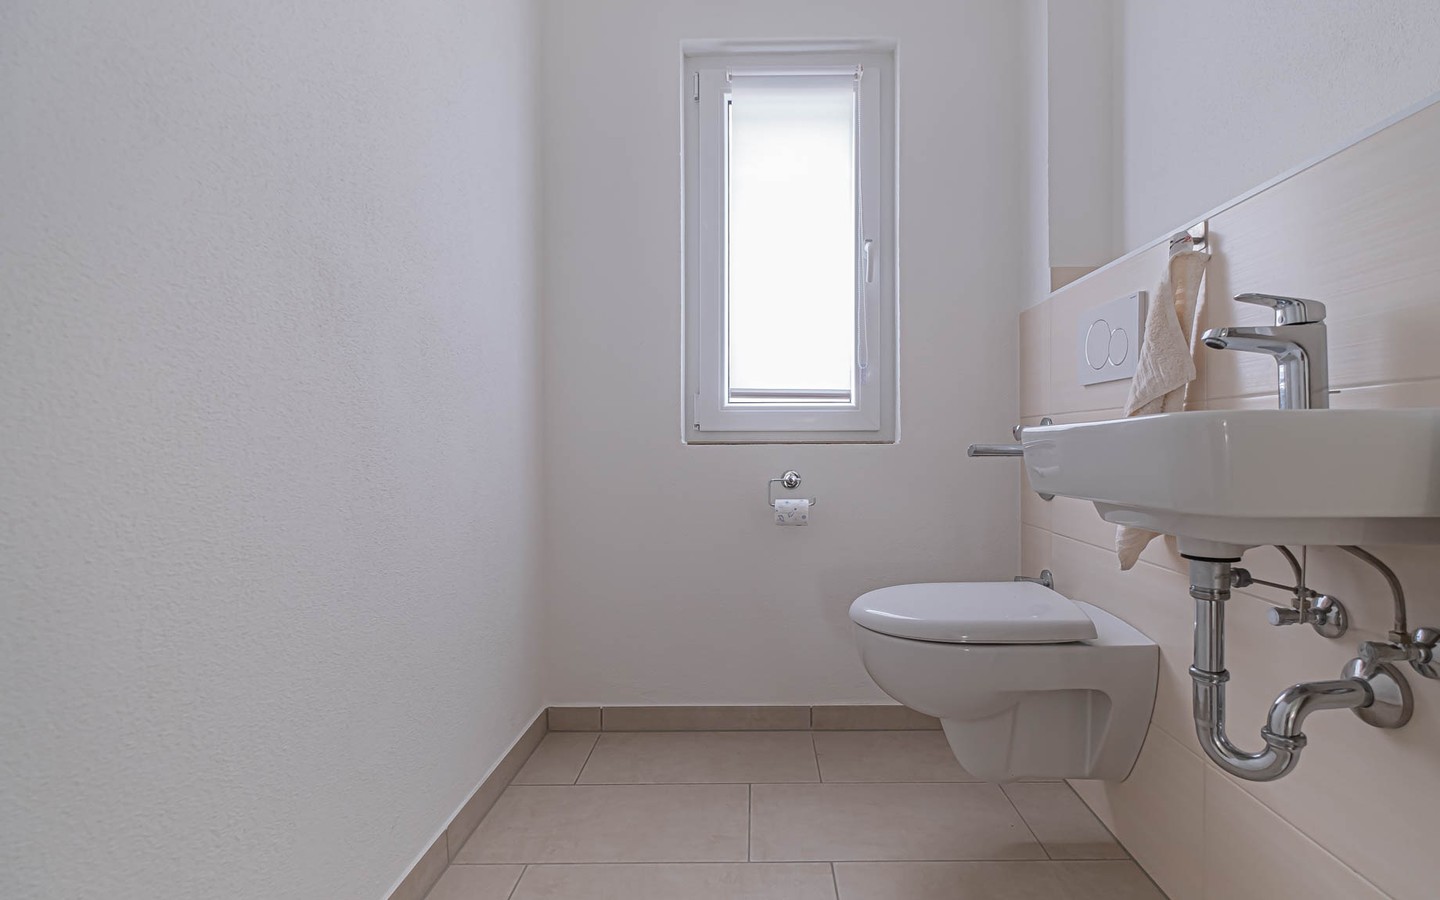 WC - Frisch sanierte Dreizimmerwohnung mit Balkon und Garage in Eppelheim